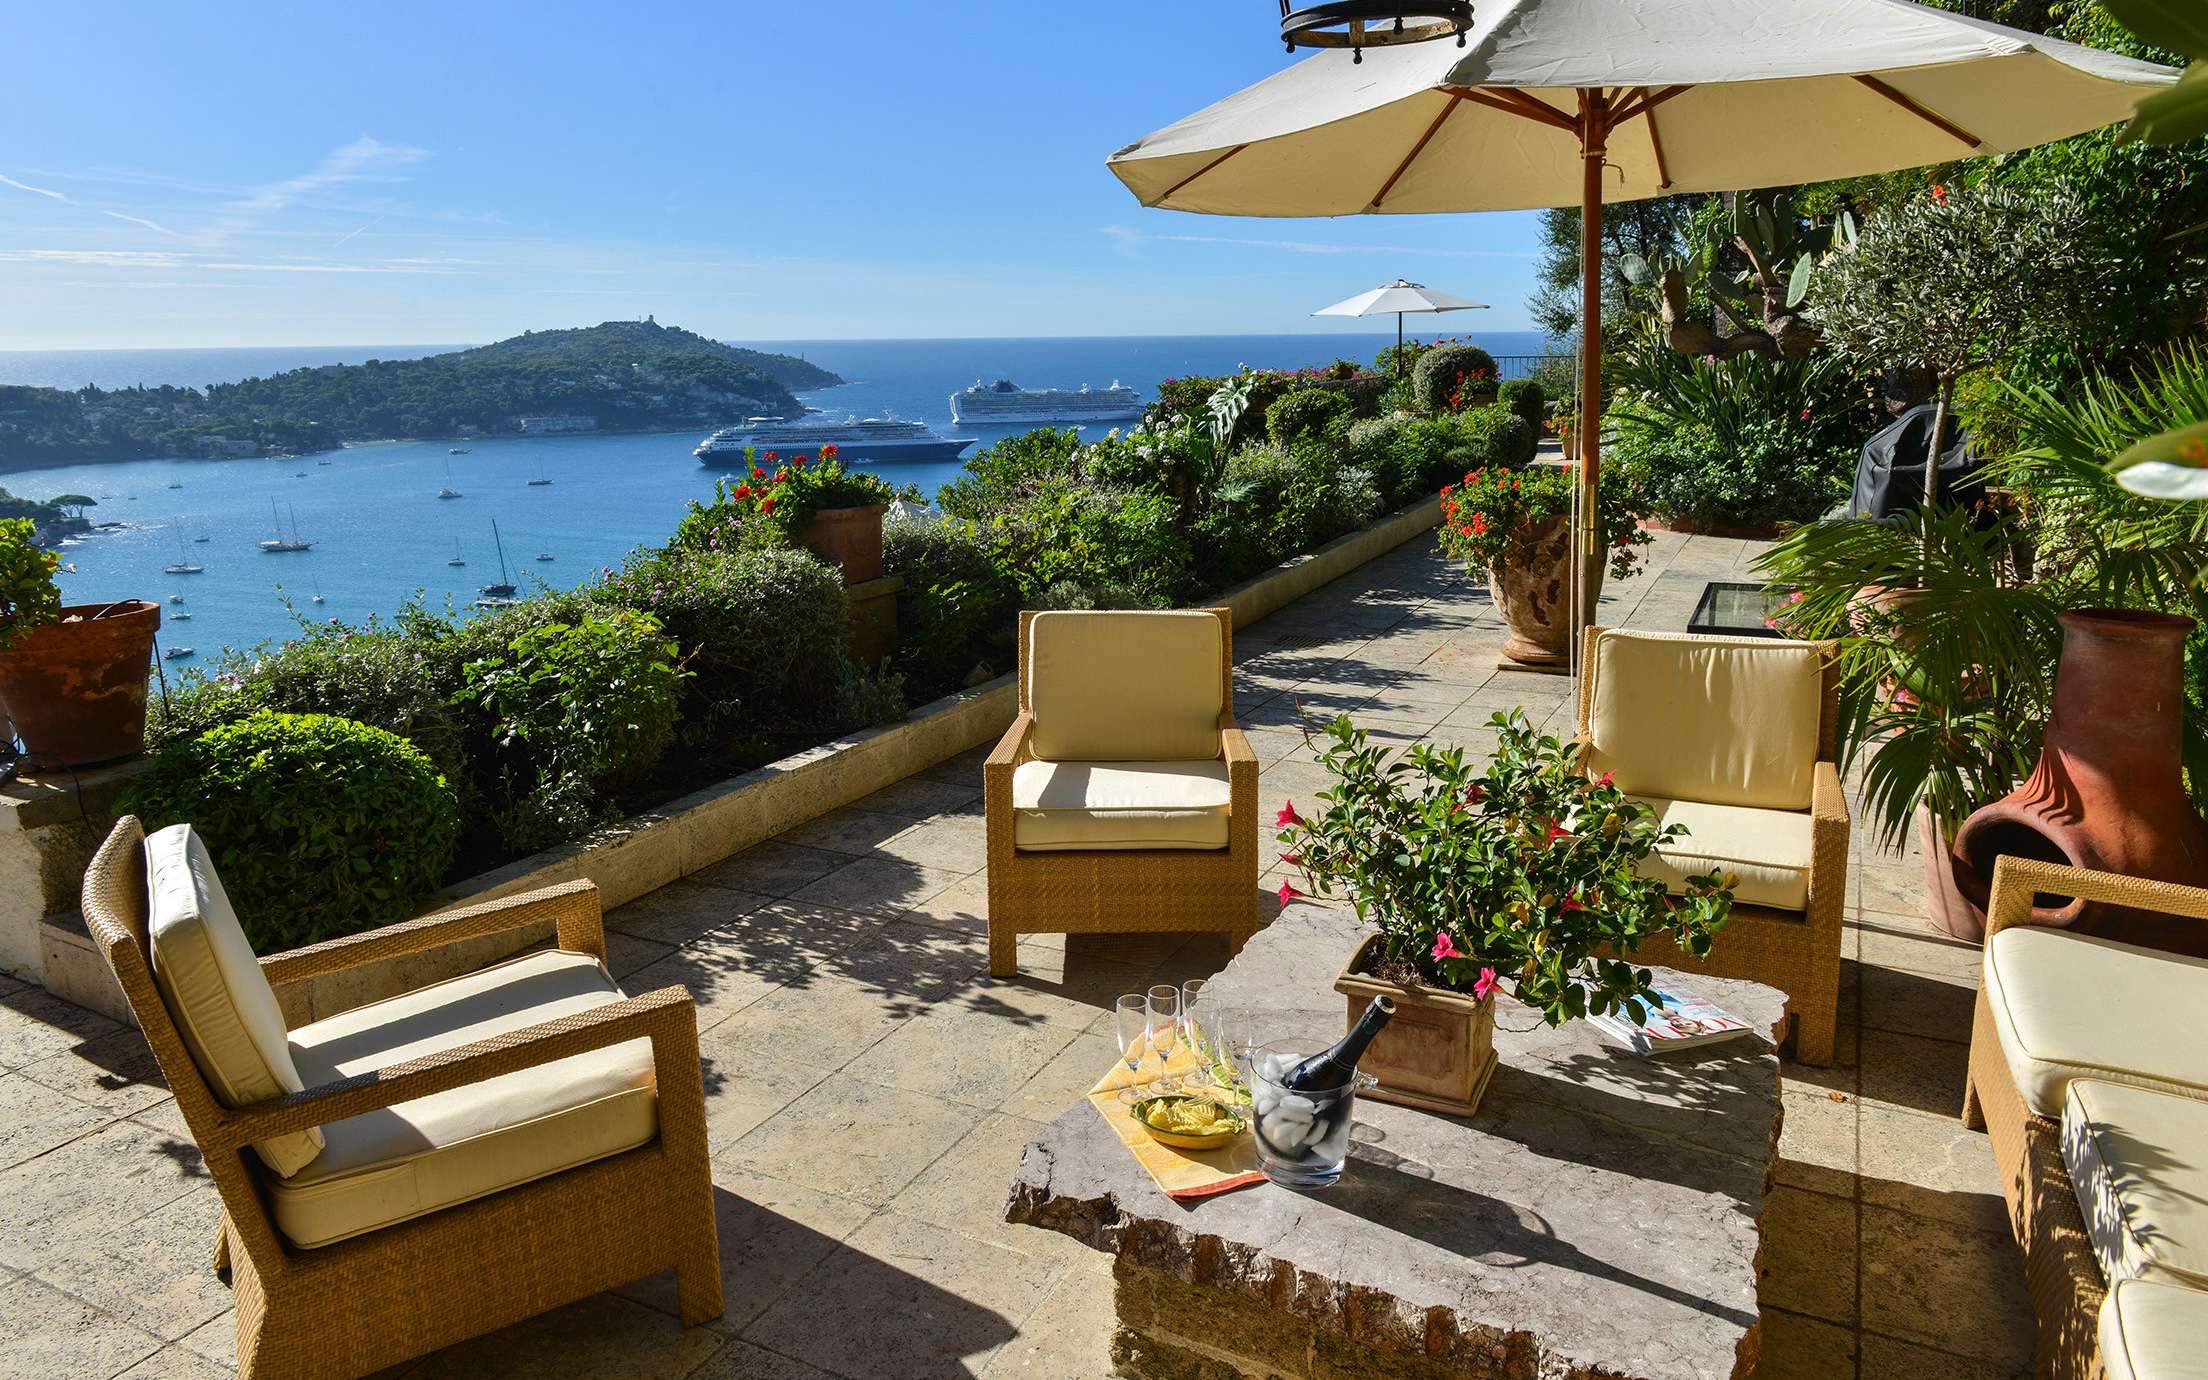 Luxury Mediterranean villas